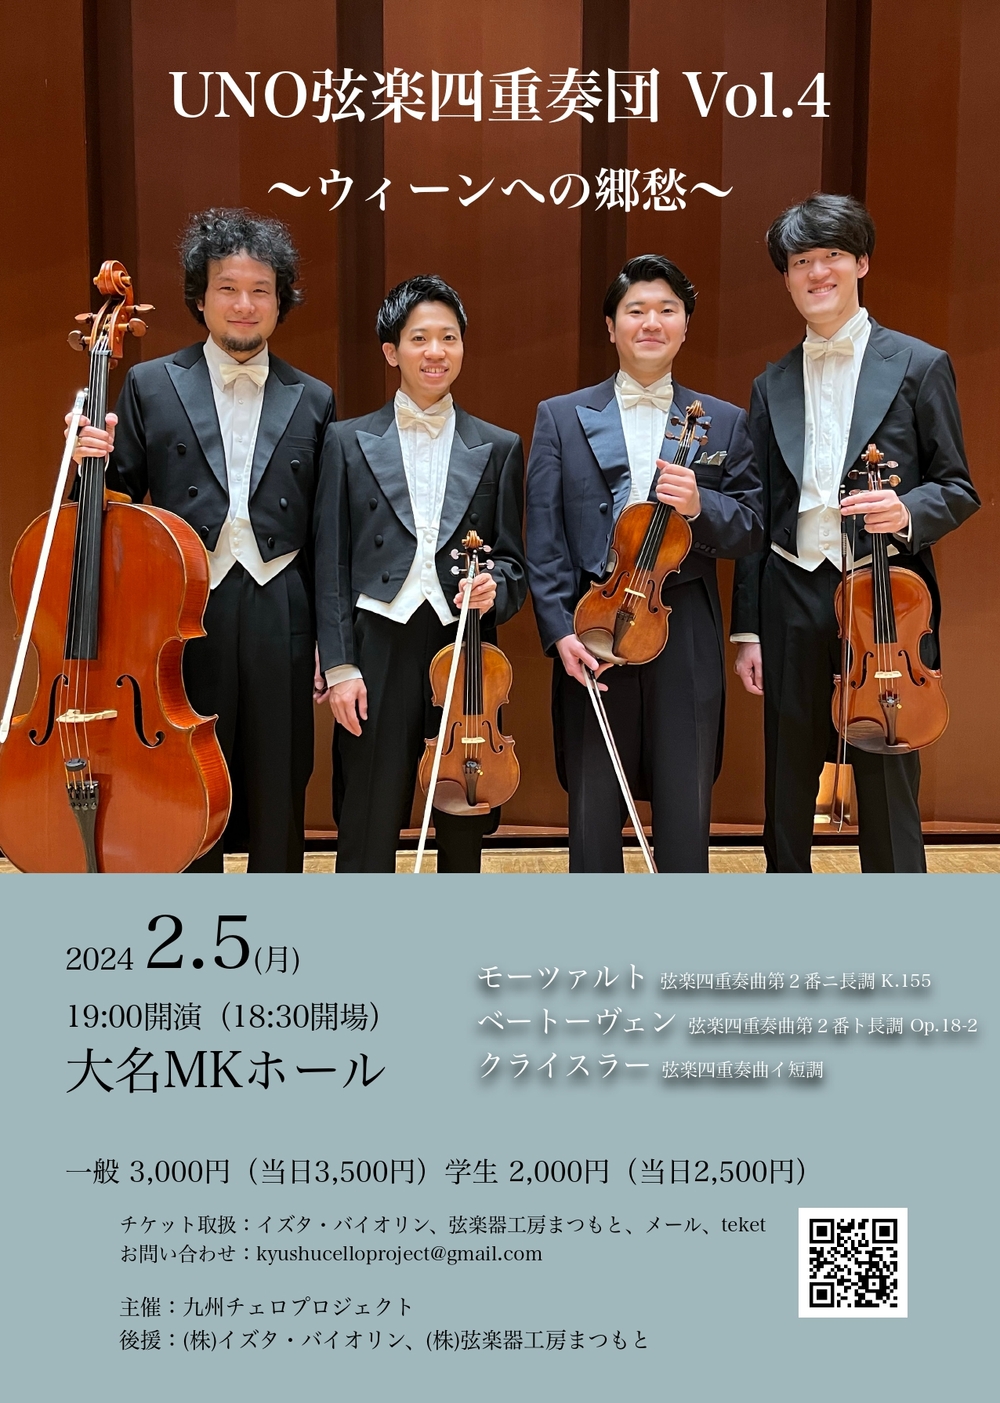 UNO弦楽四重奏団 Vol.4 〜ウィーンへの郷愁〜【九州チェロプロジェクト】 | 大名MKホール